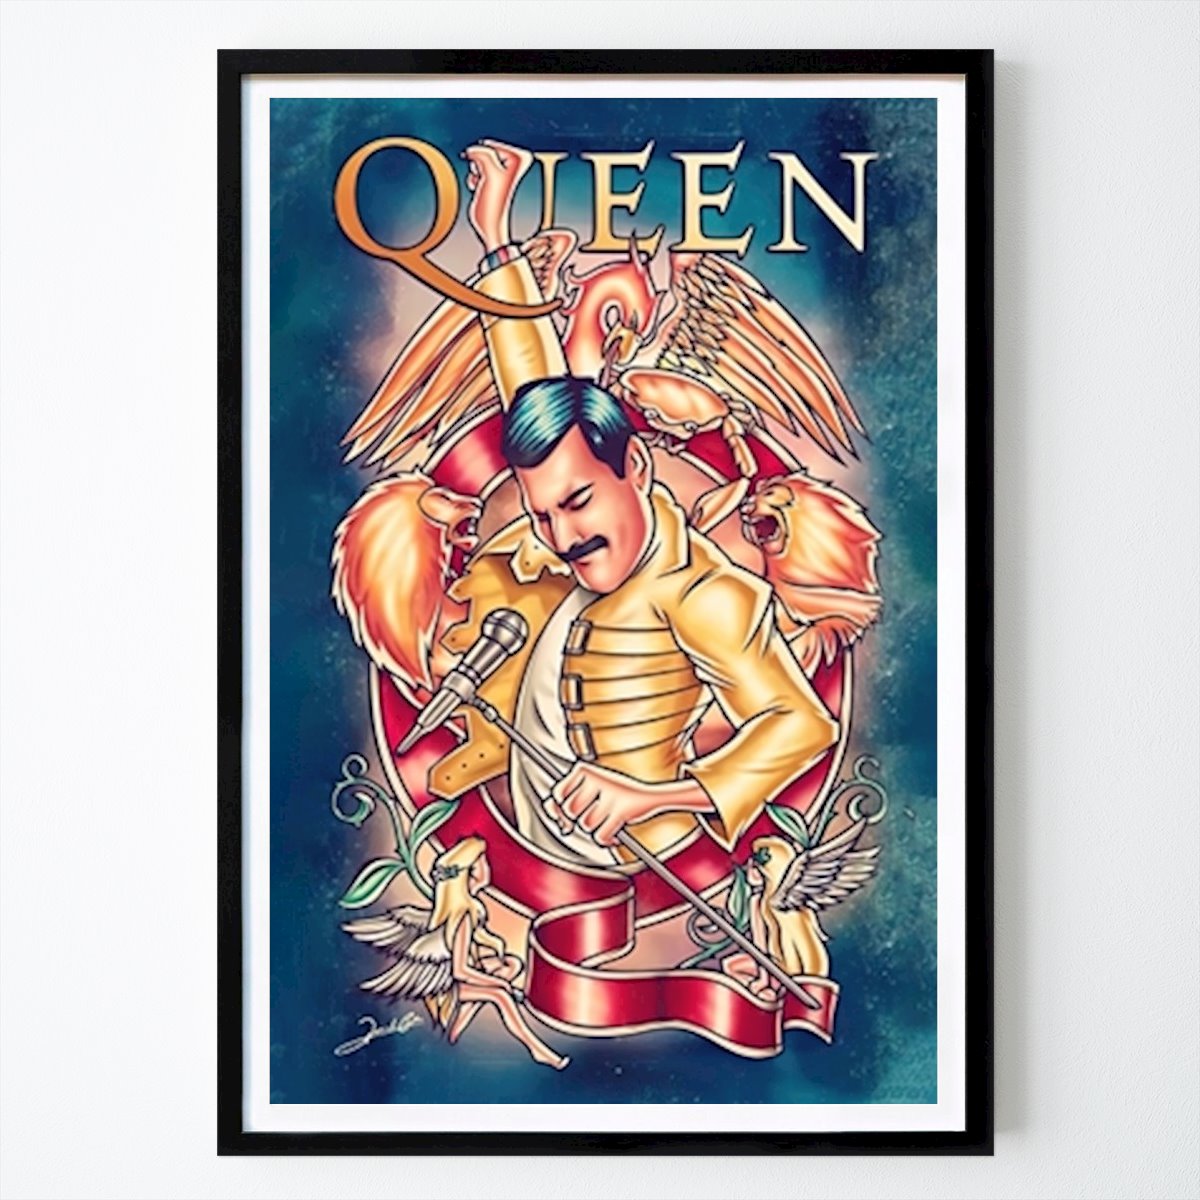 Poster: Queen Band Illustration von Pulp Cover von Printler